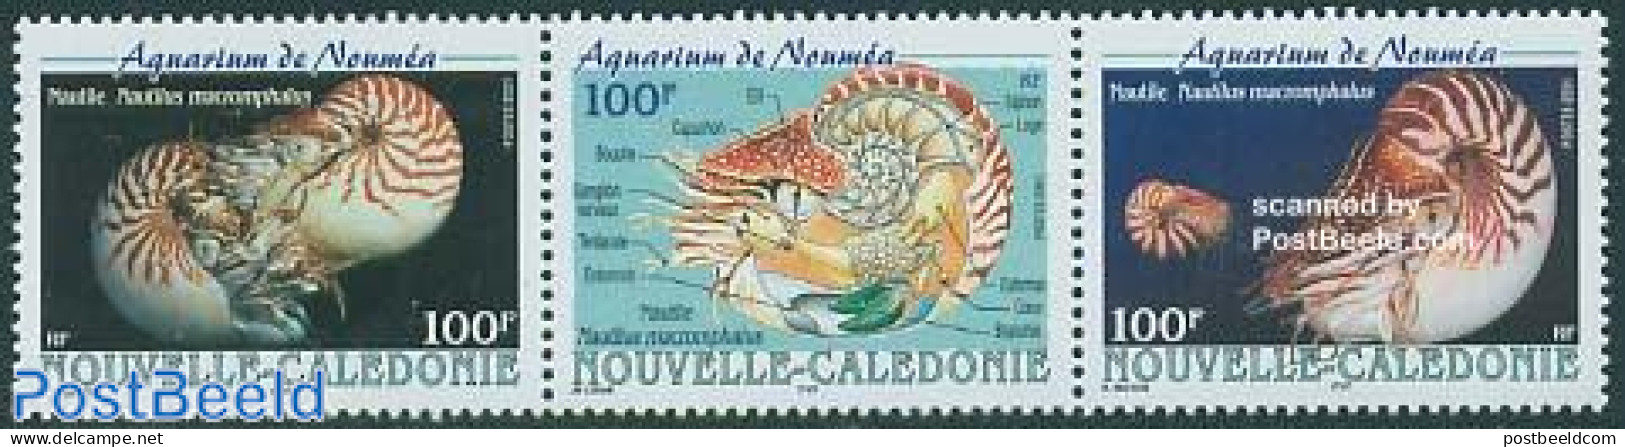 New Caledonia 2001 Noumea Aquarium 3v [::], Mint NH, Nature - Shells & Crustaceans - Ongebruikt